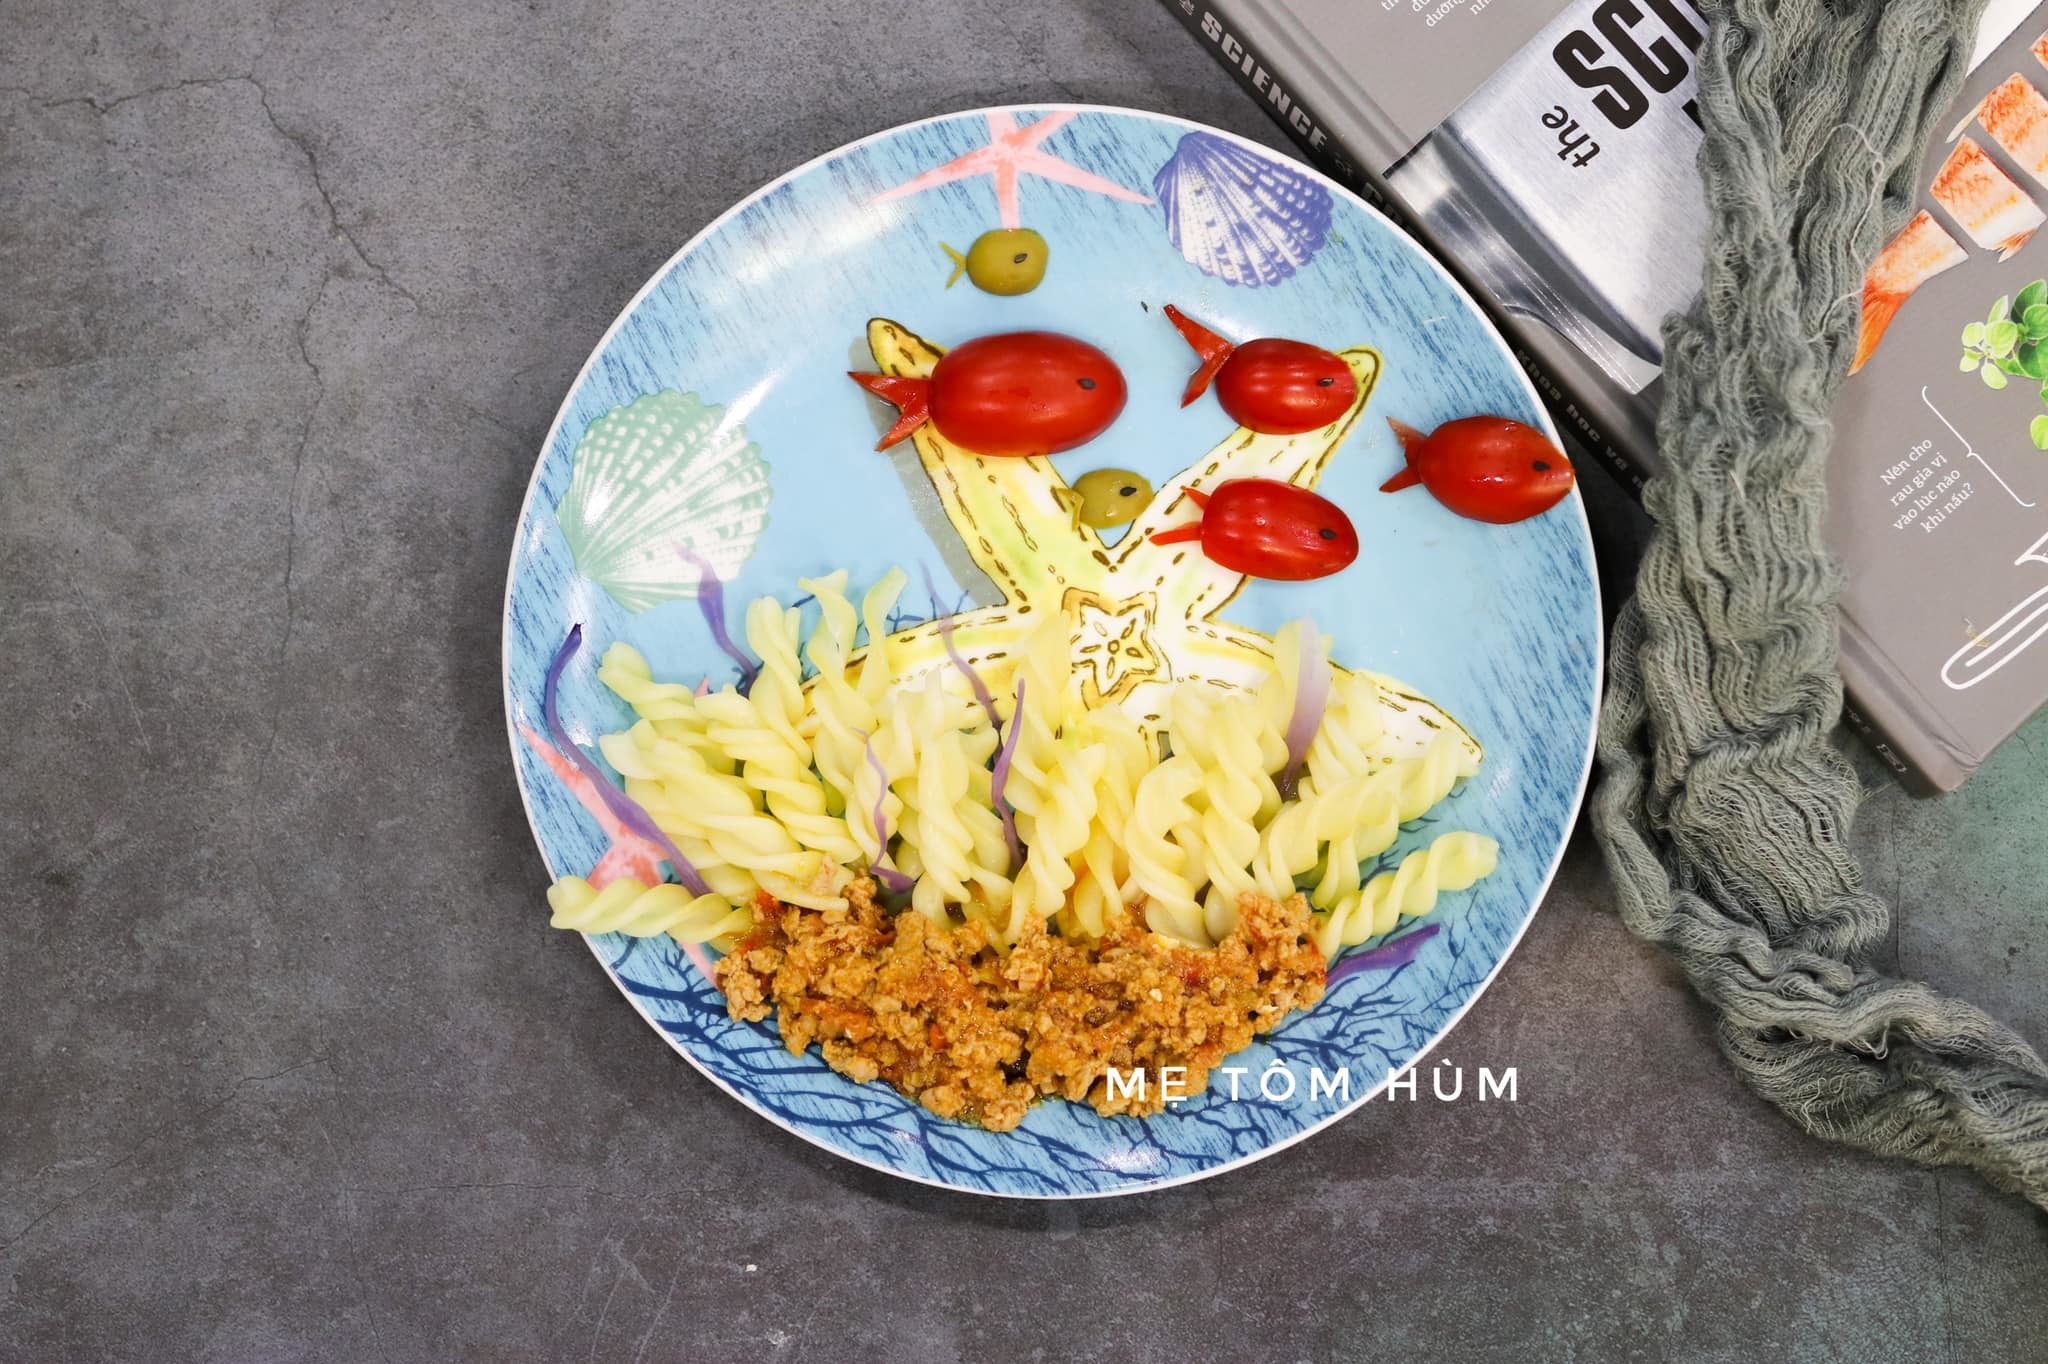 Mẹ đơn thân Hà Nội tạo hình bữa ăn cho con đẹp như tranh vẽ